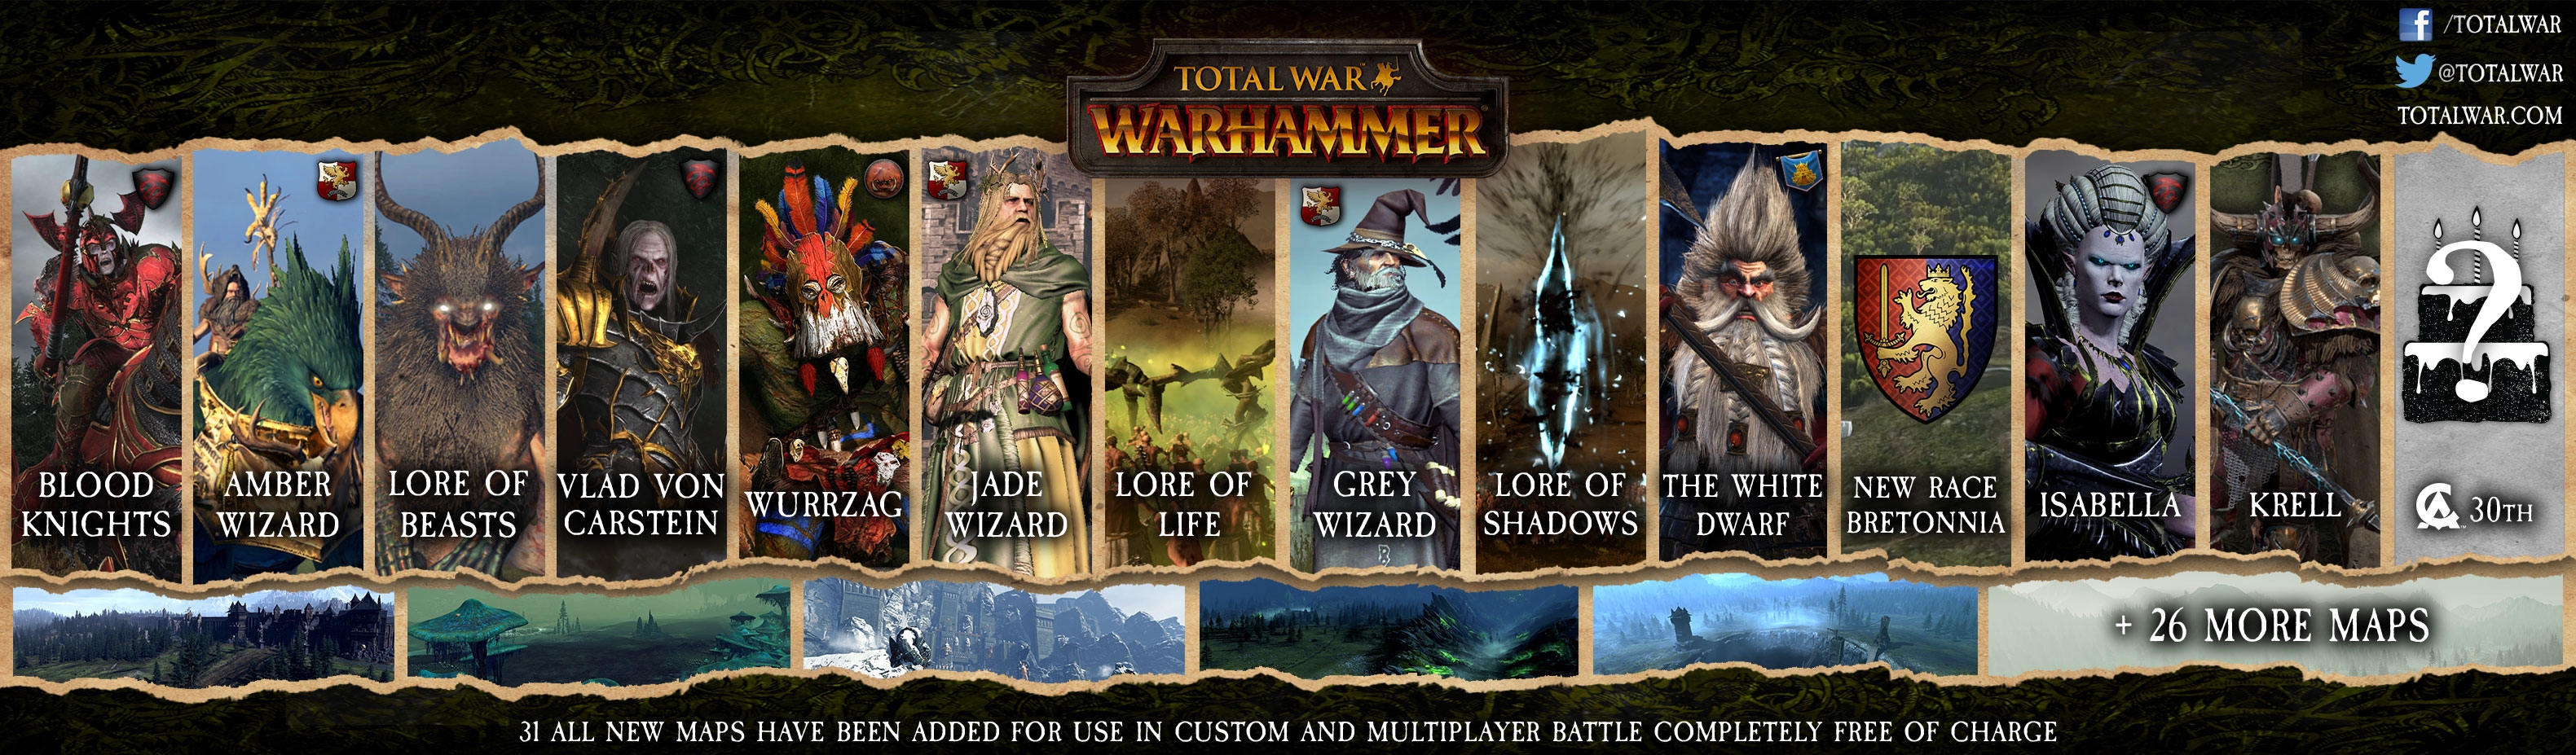 total war warhammer online campaign